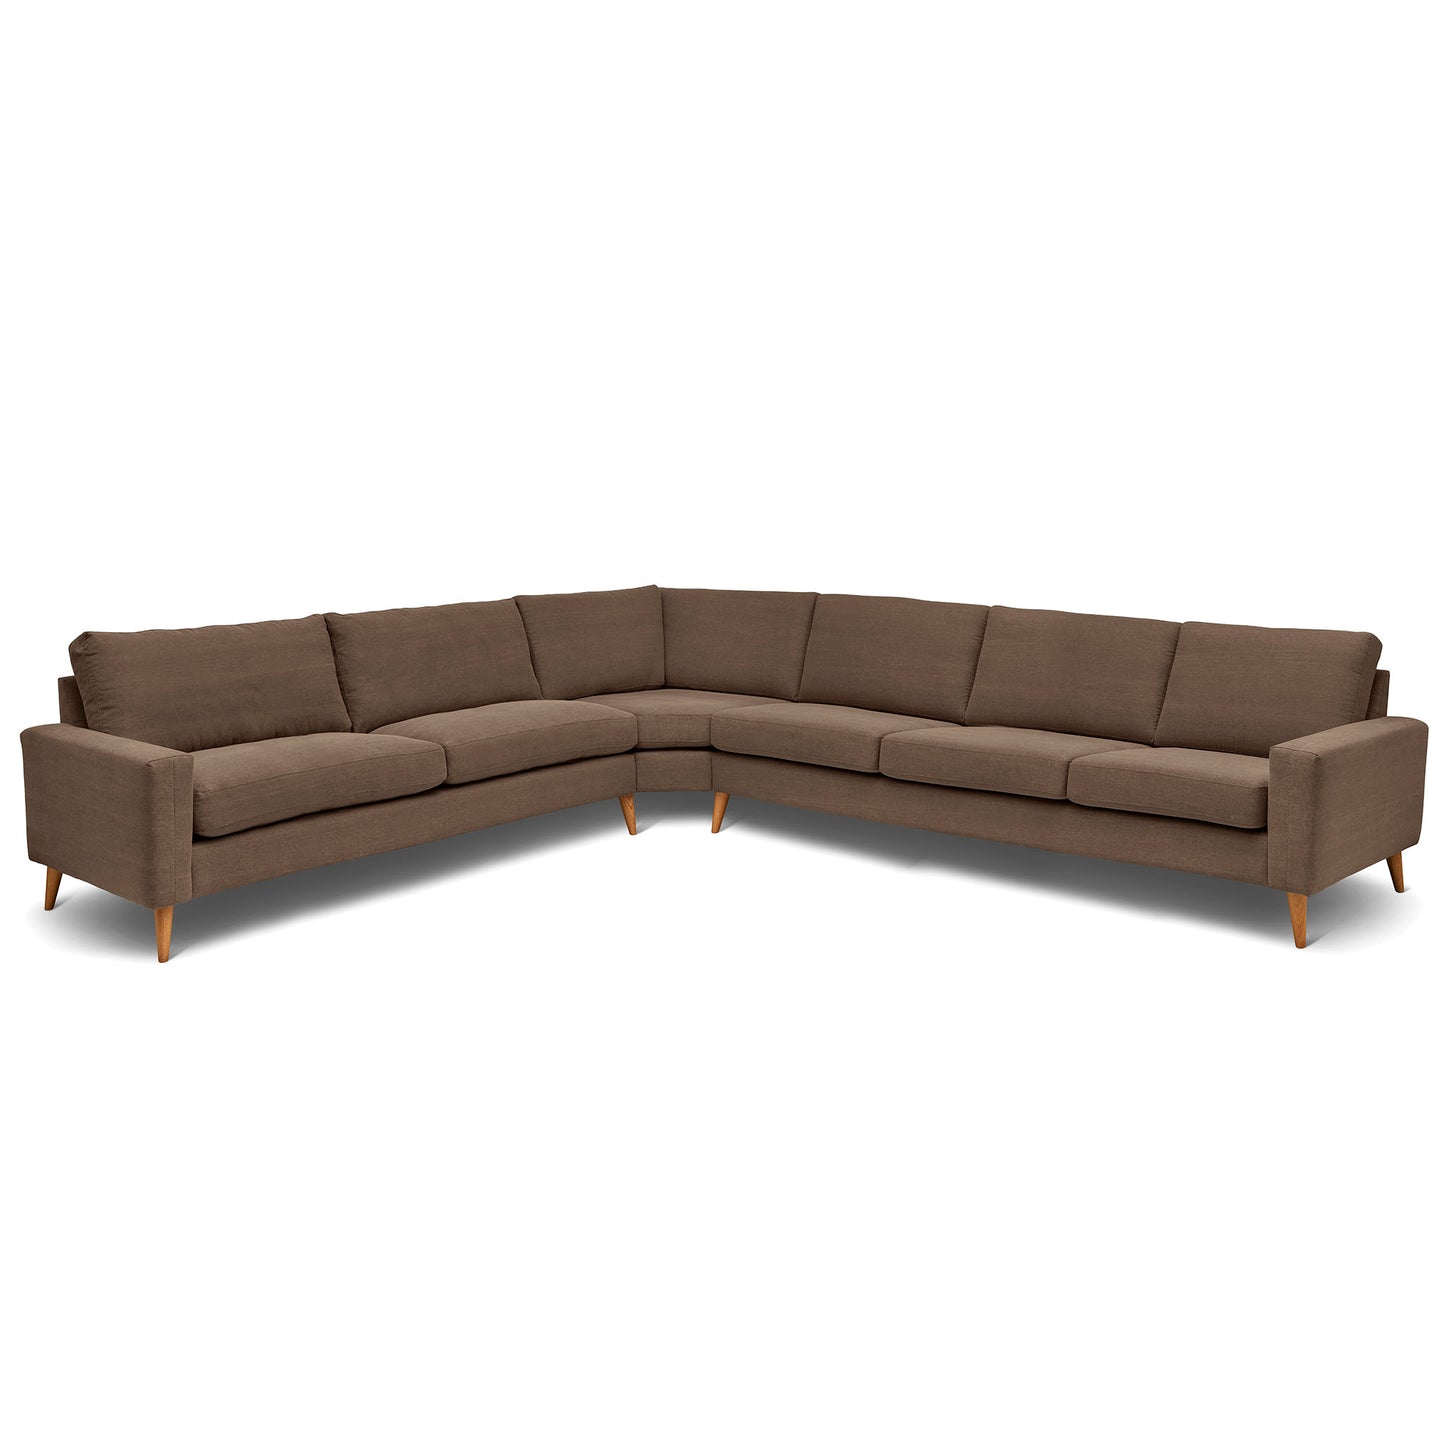 Stor rektangulär hörnsoffa med måttet 321x360 cm. Sittvänlig soffa för äldre i brunt tyg